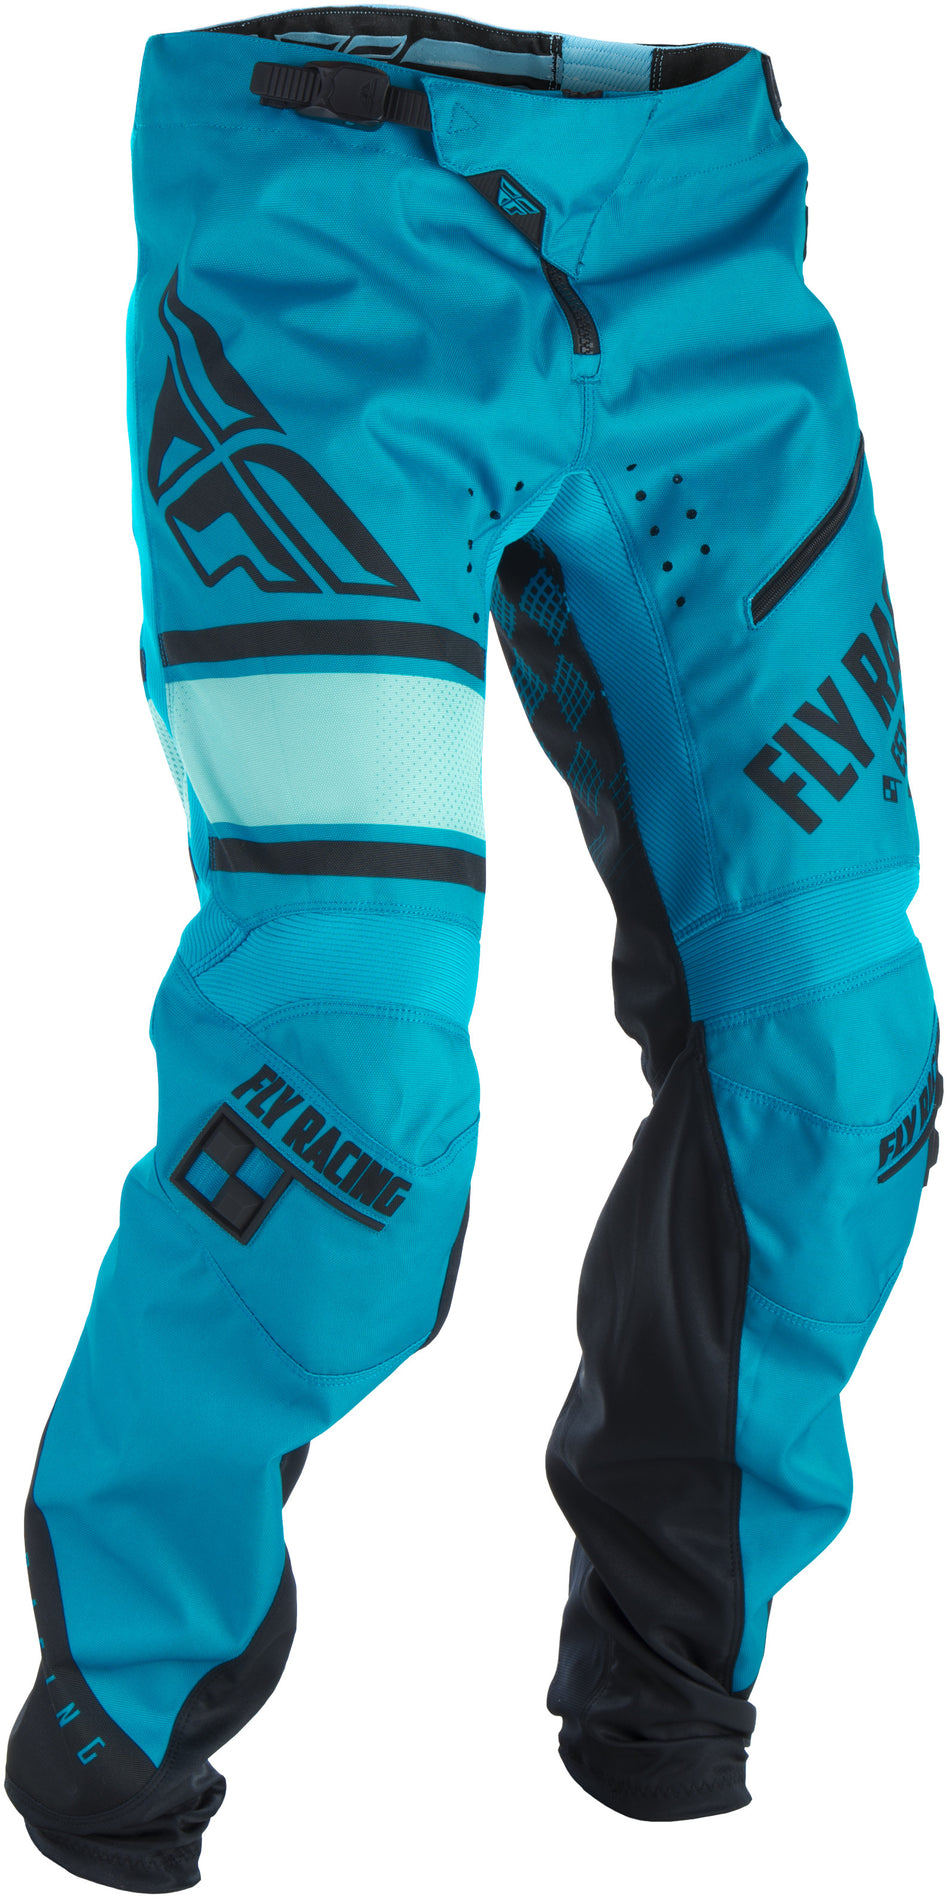 FLY RACING Kinetic Era Bicycle Pants Blue/Black Sz 20 371-02120